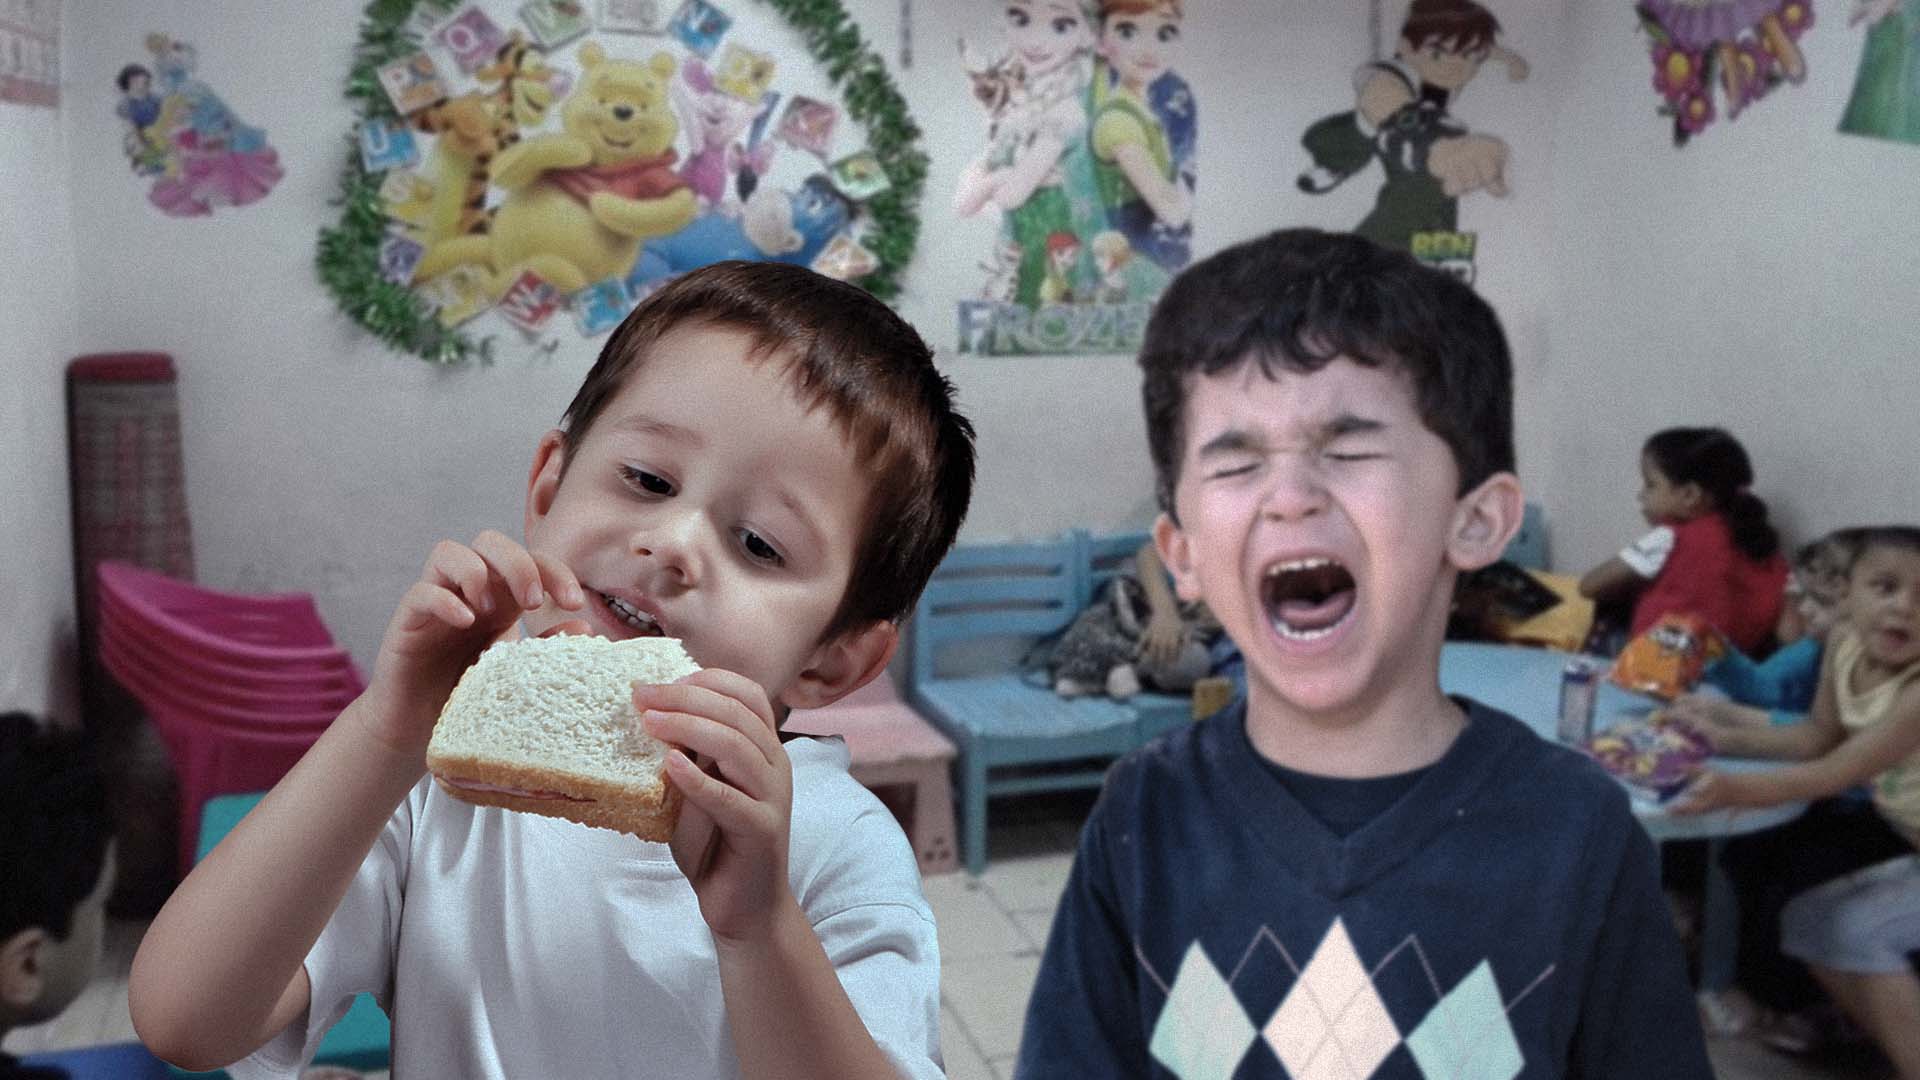 صورة طفل يتذمر من تناول زميله للطعام أمامه رغم عدم رغبته في الأكل